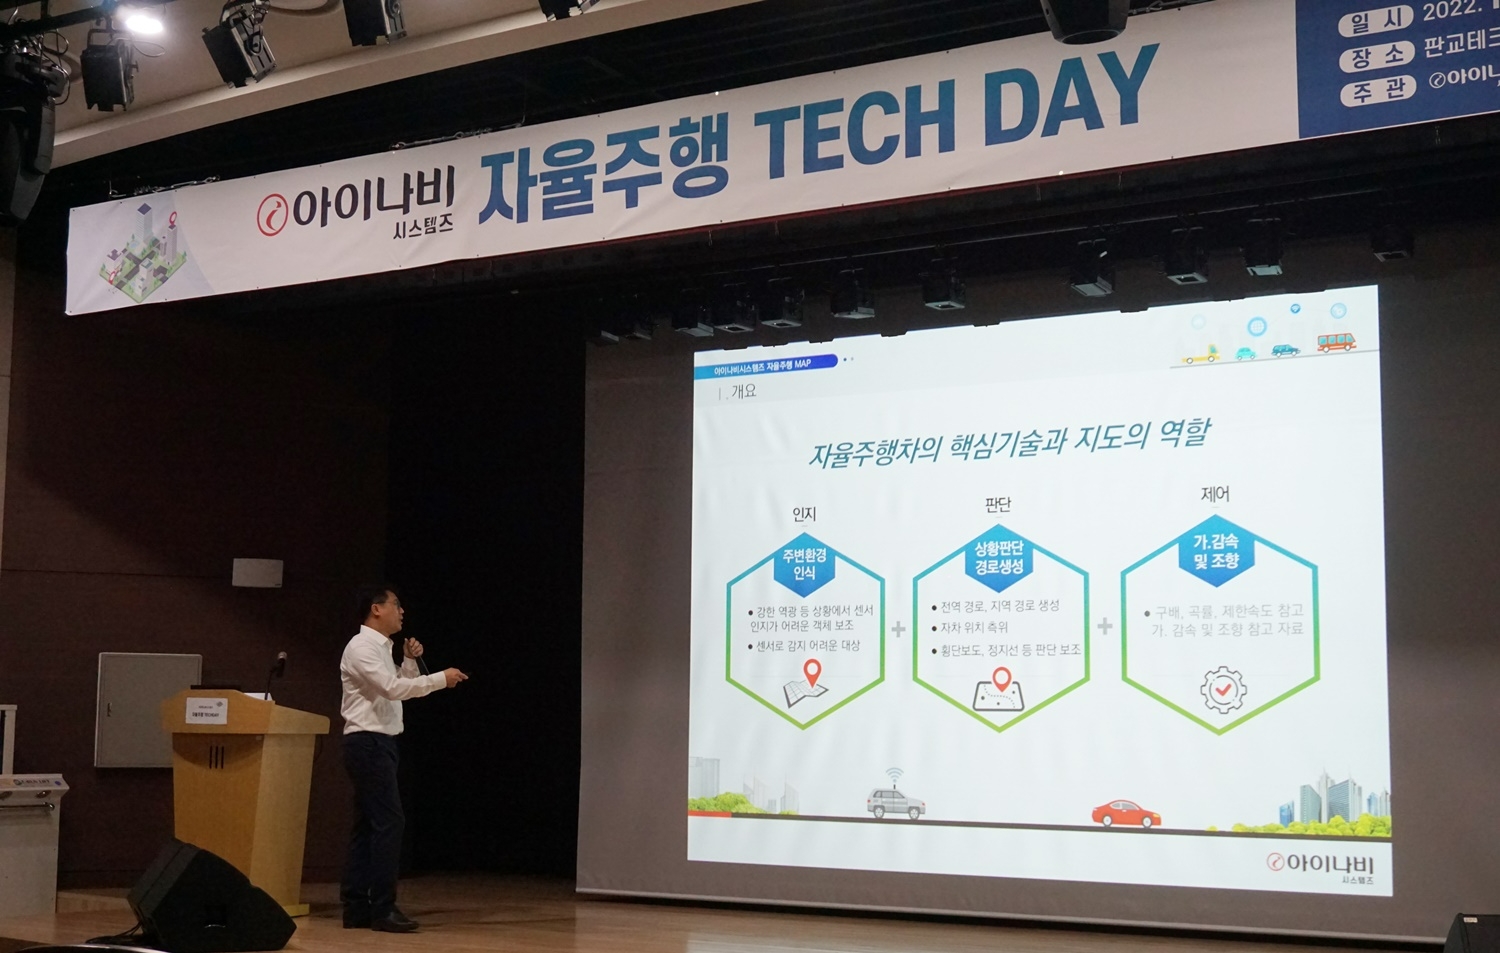 [산업단신] 아이나비시스템즈, ‘자율주행 TECH DAY’ 개최